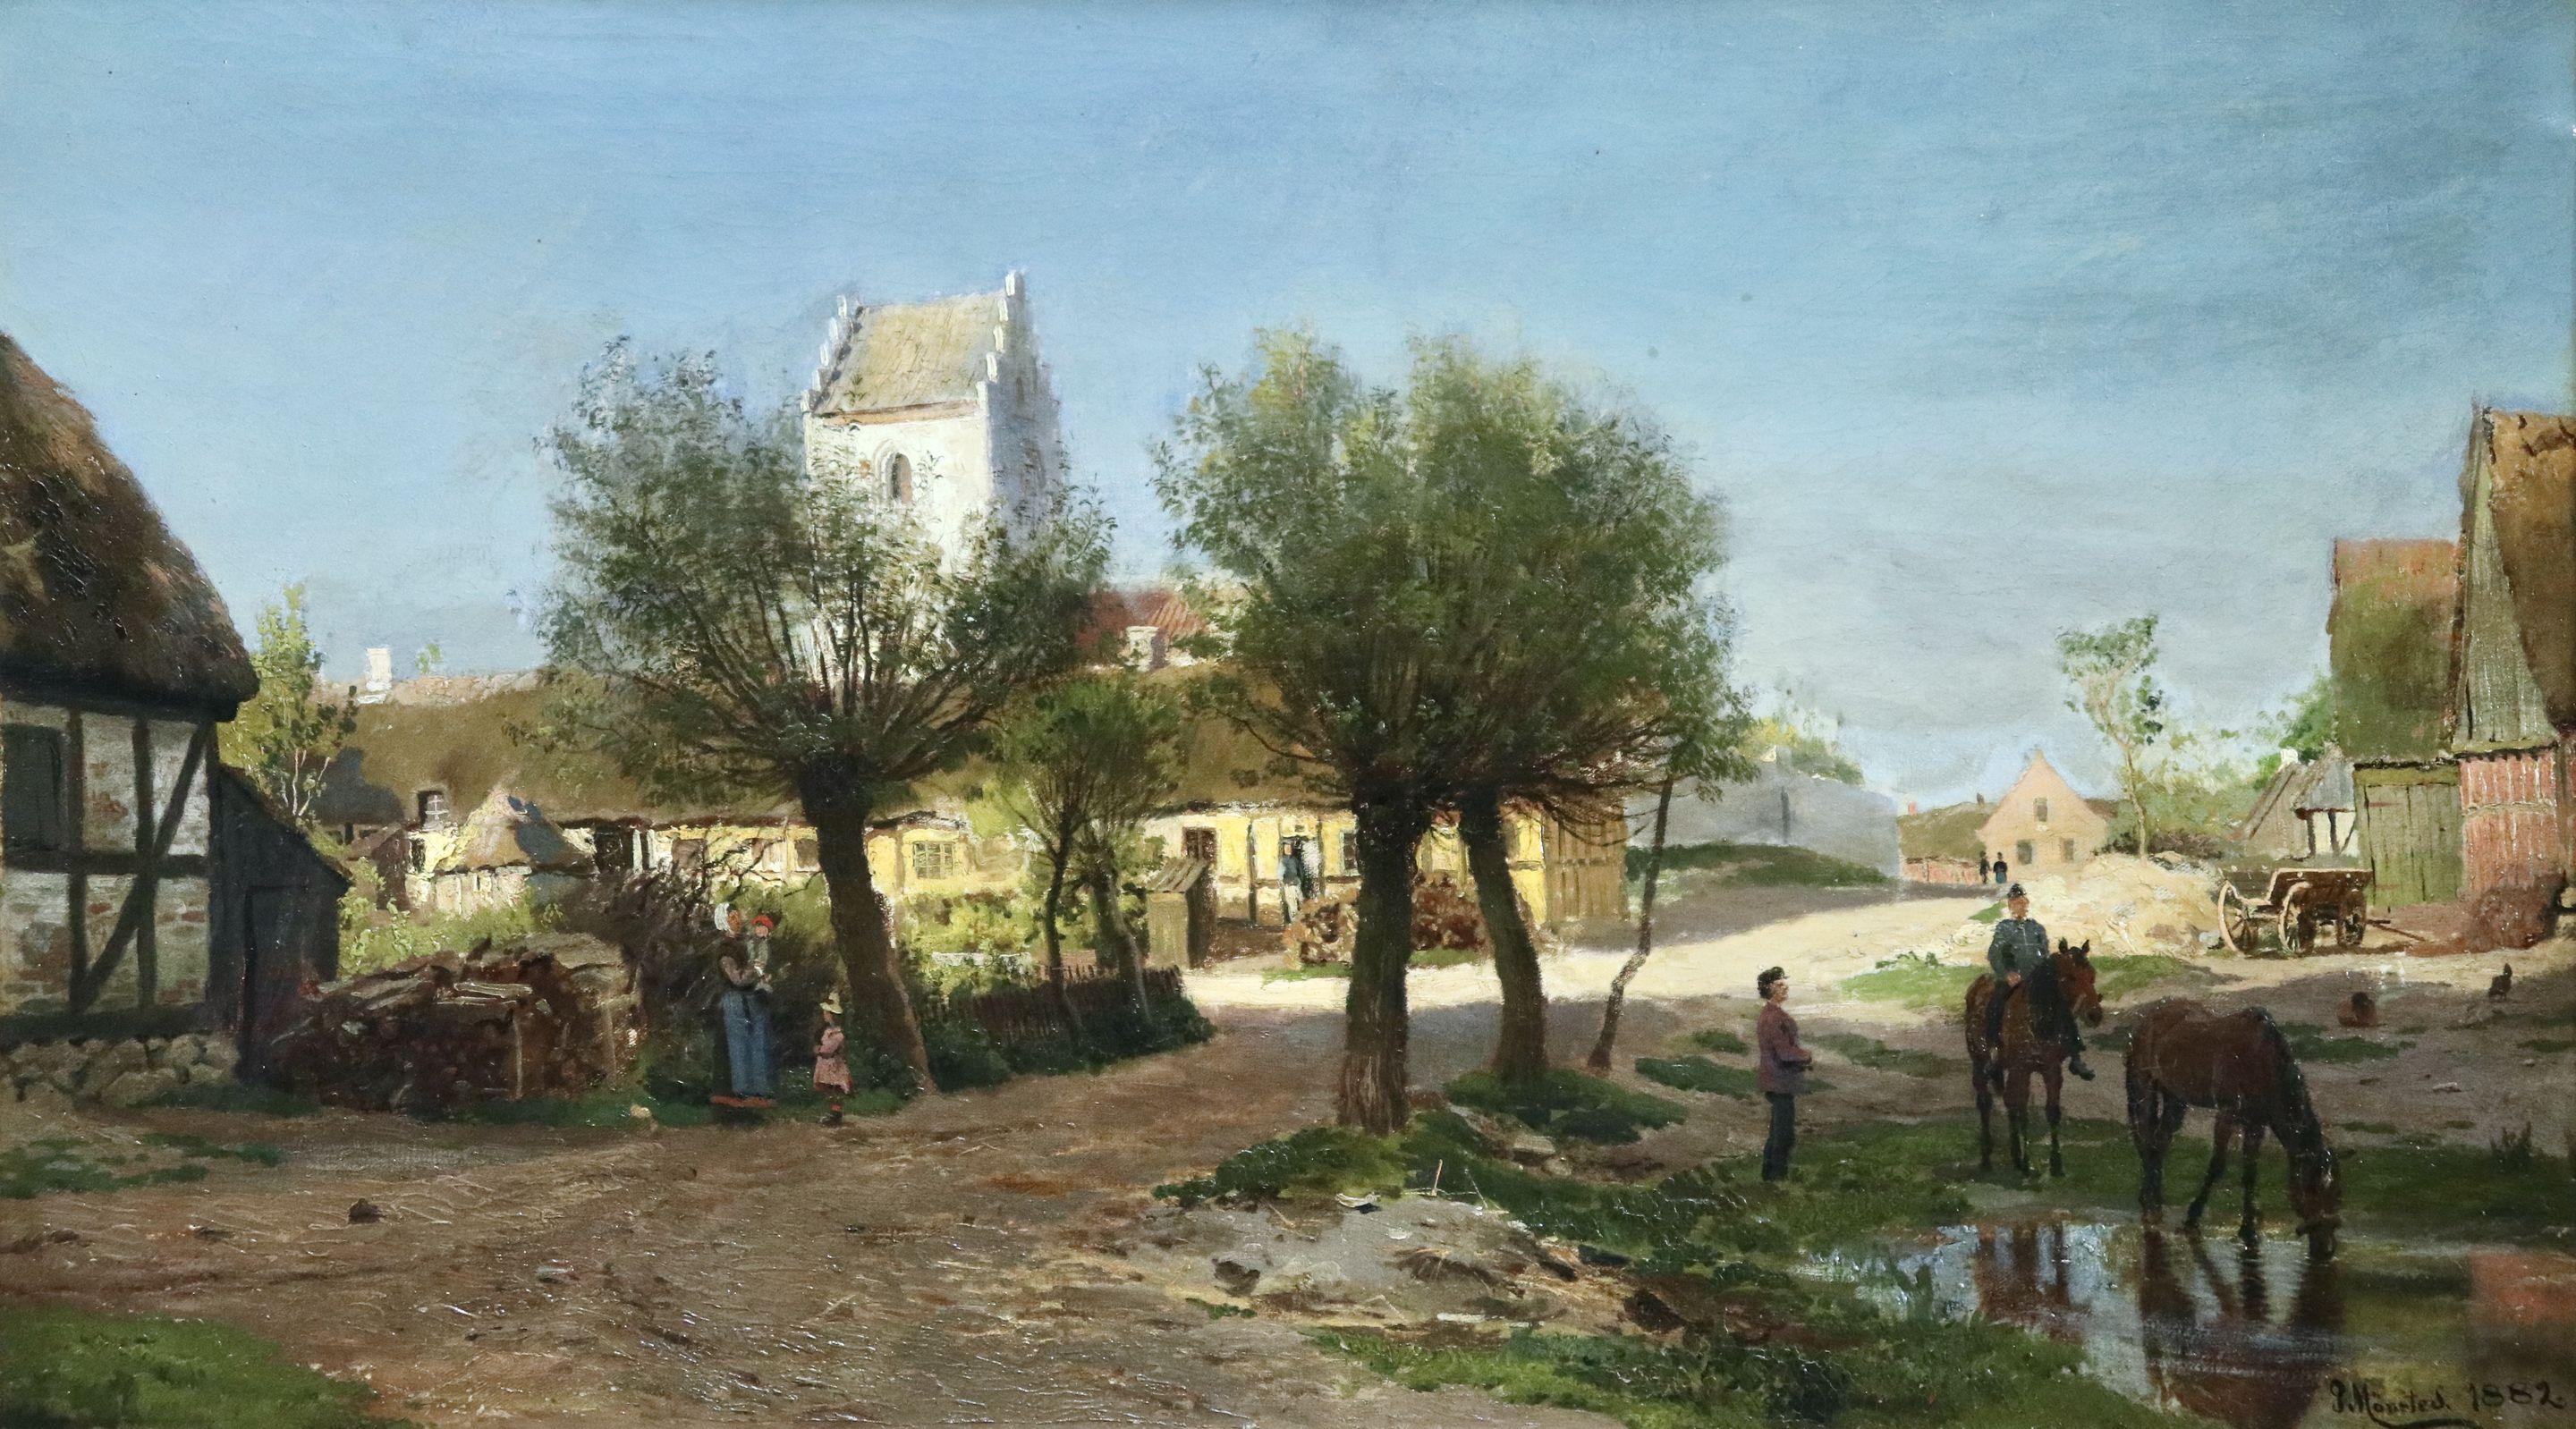 Peder Mørk Mønsted Landscape Painting - Summer Afternoon in the Village-Aarhus Region - 19th Century Landscape - Monsted